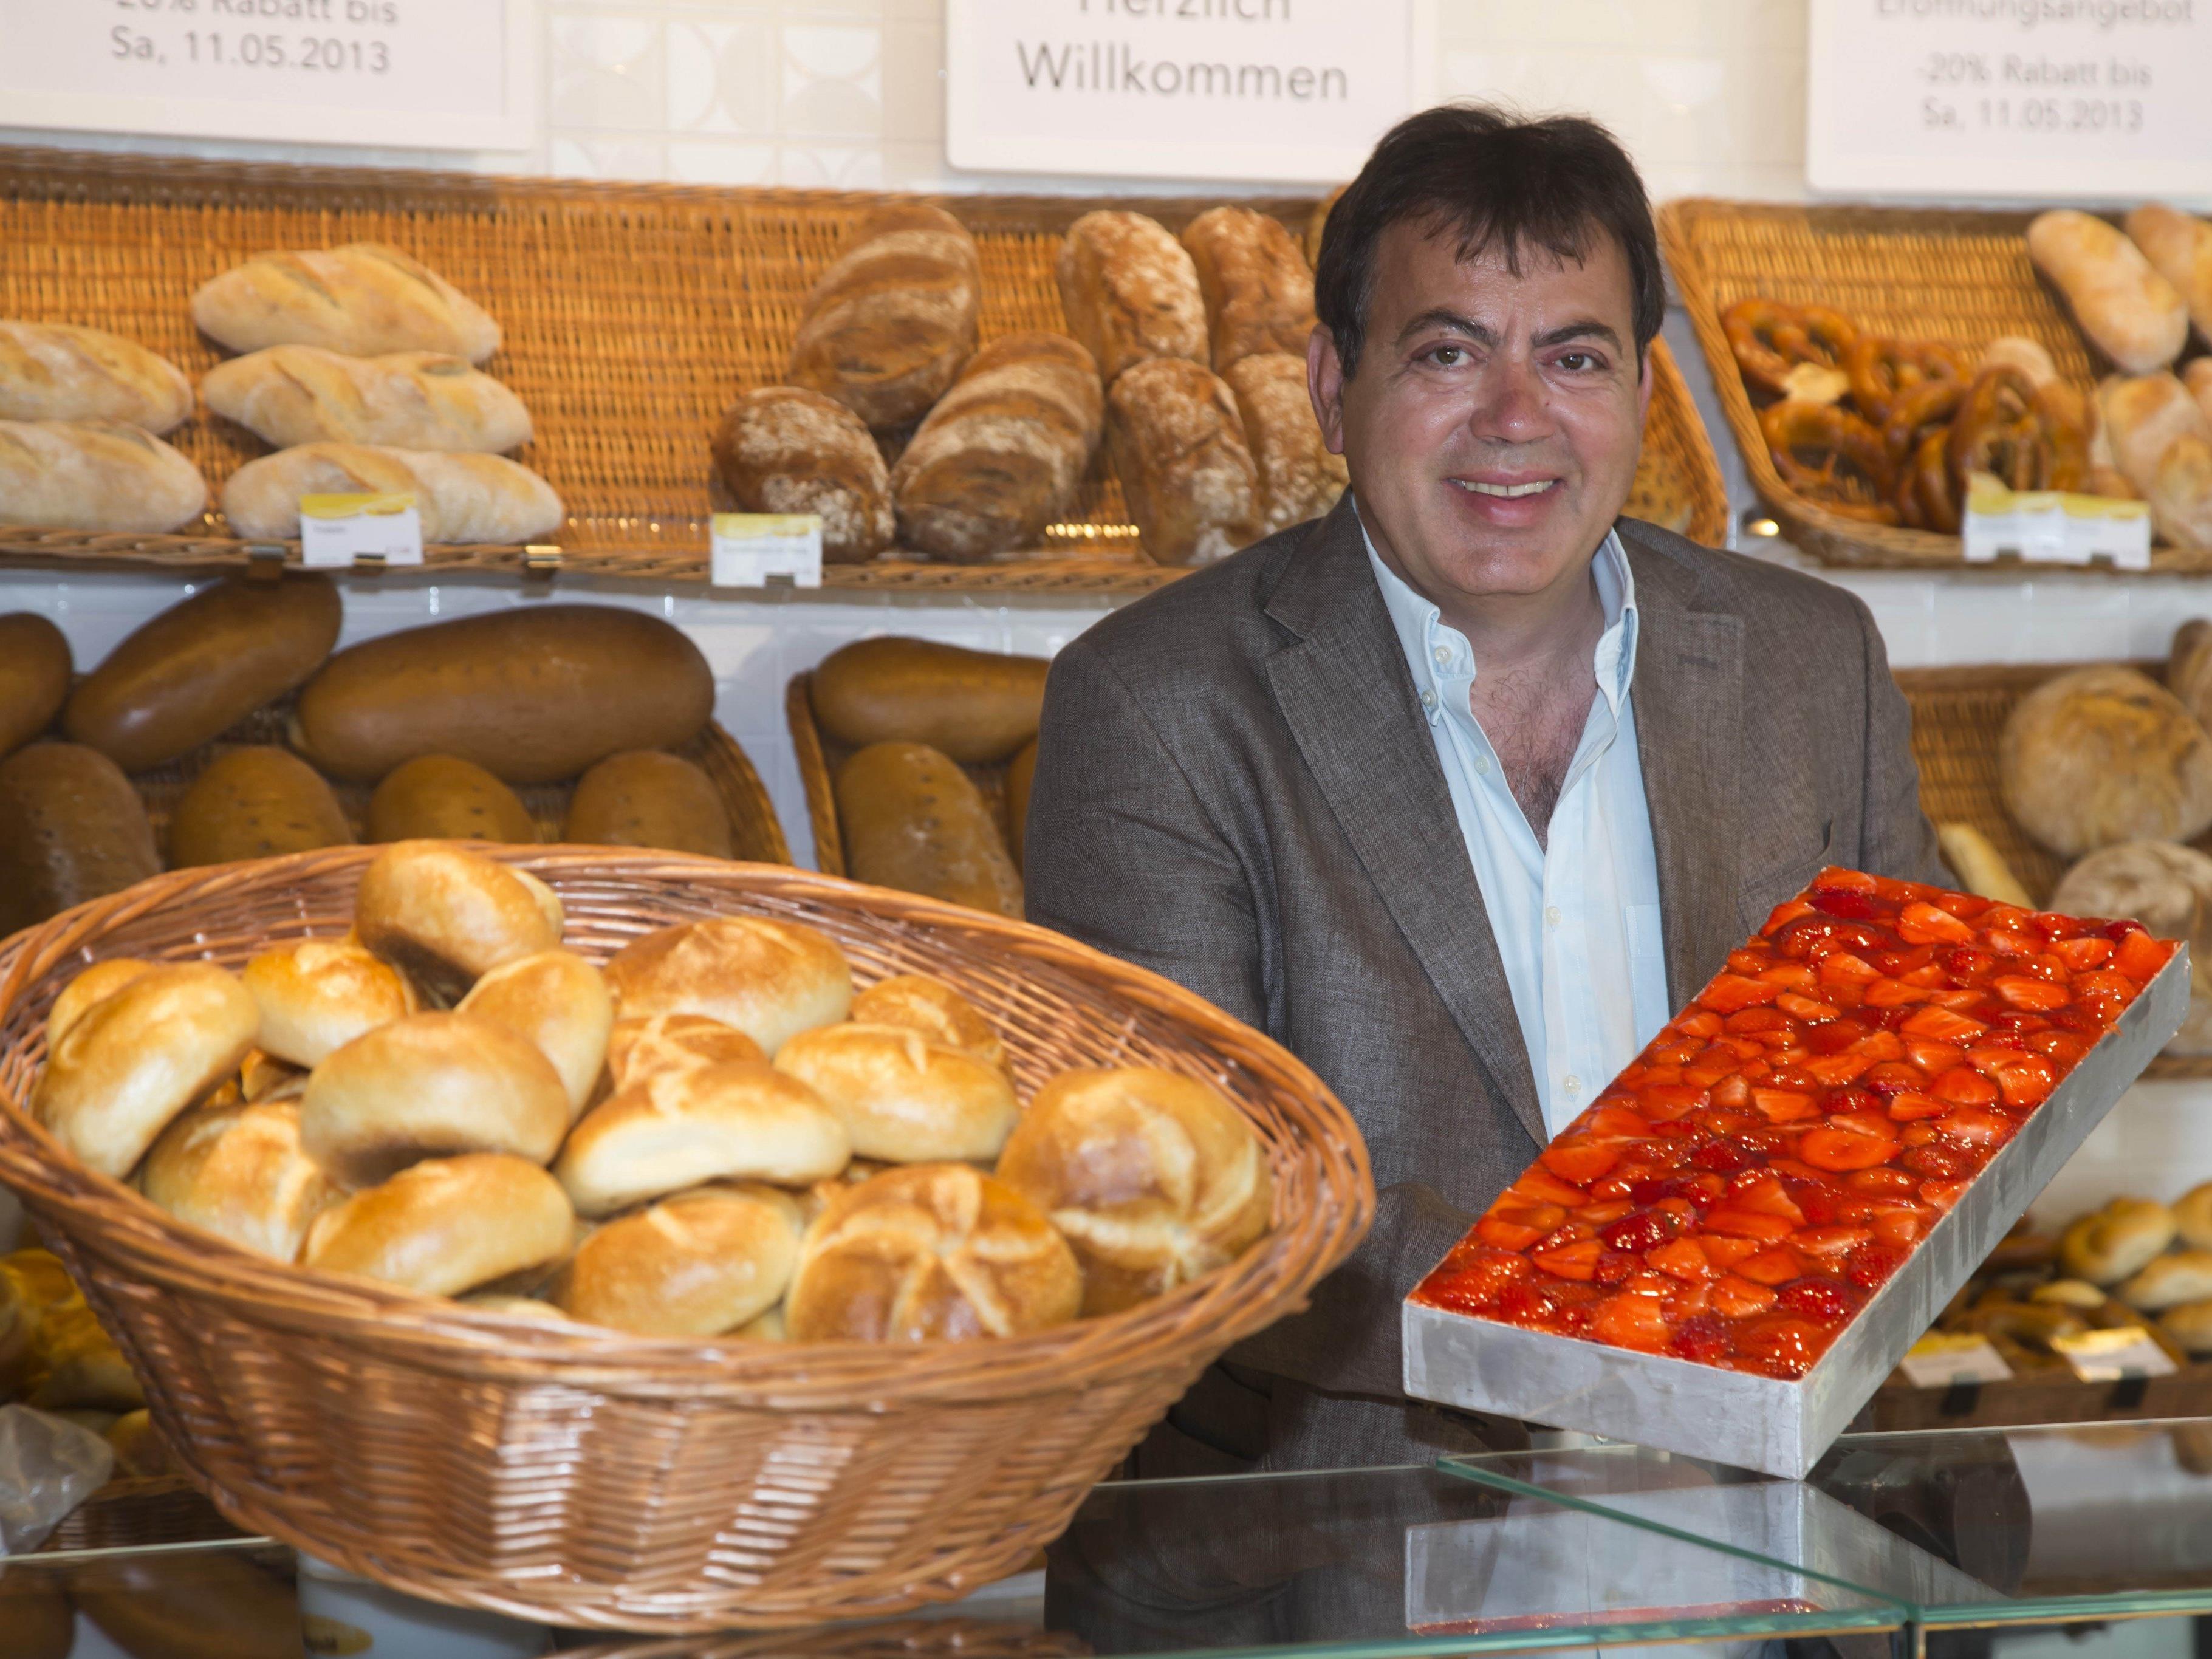 Der geschäftsführende Gesellschafter Egon Haag bestätigte den Bau eines neuen Firmensitzes der Bäckerei Mangold.